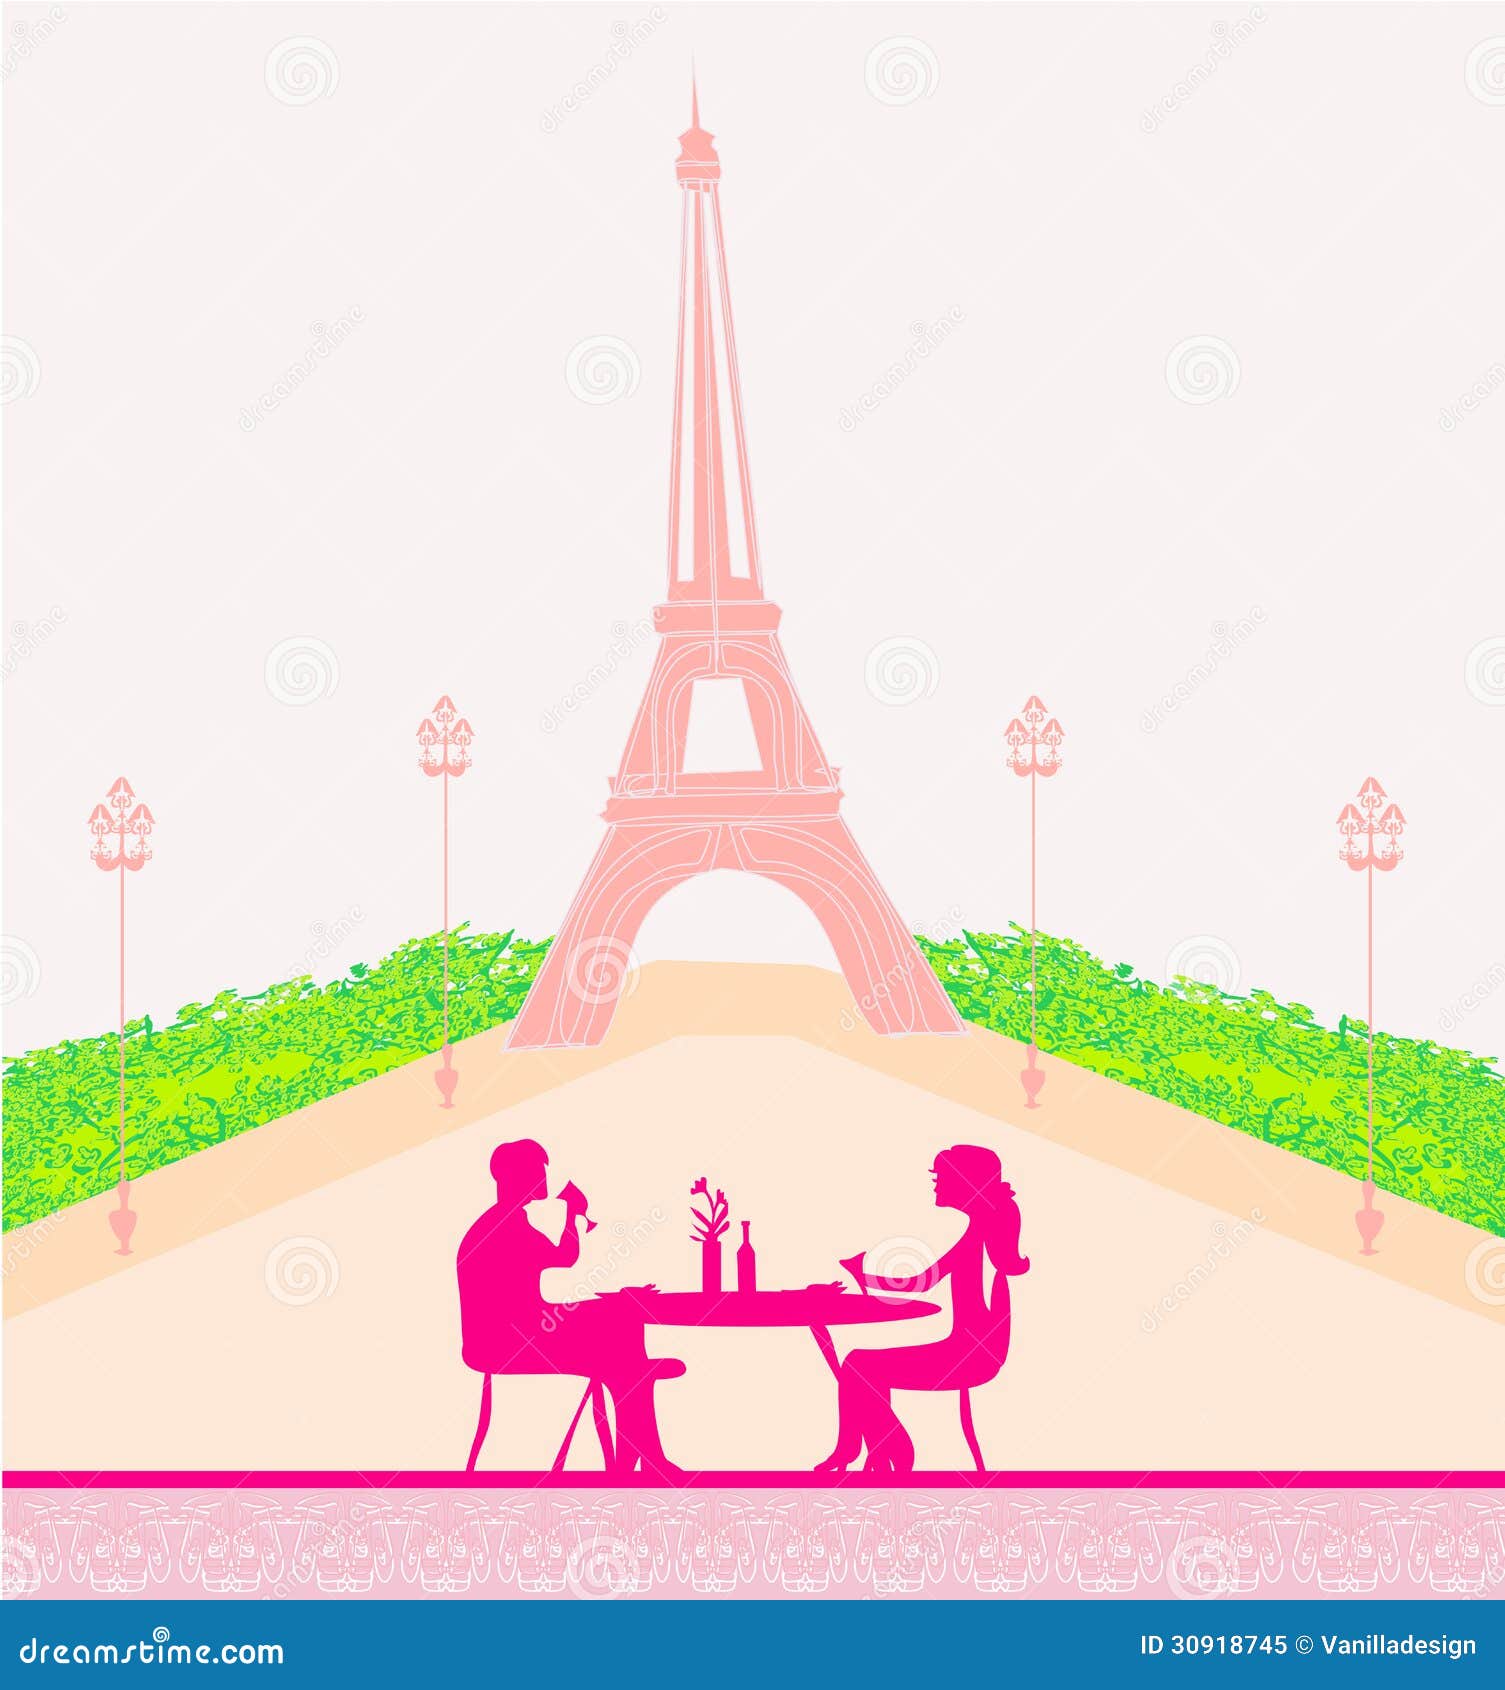 Lieux de drague Paris : où aller pour draguer les filles à Paris ?